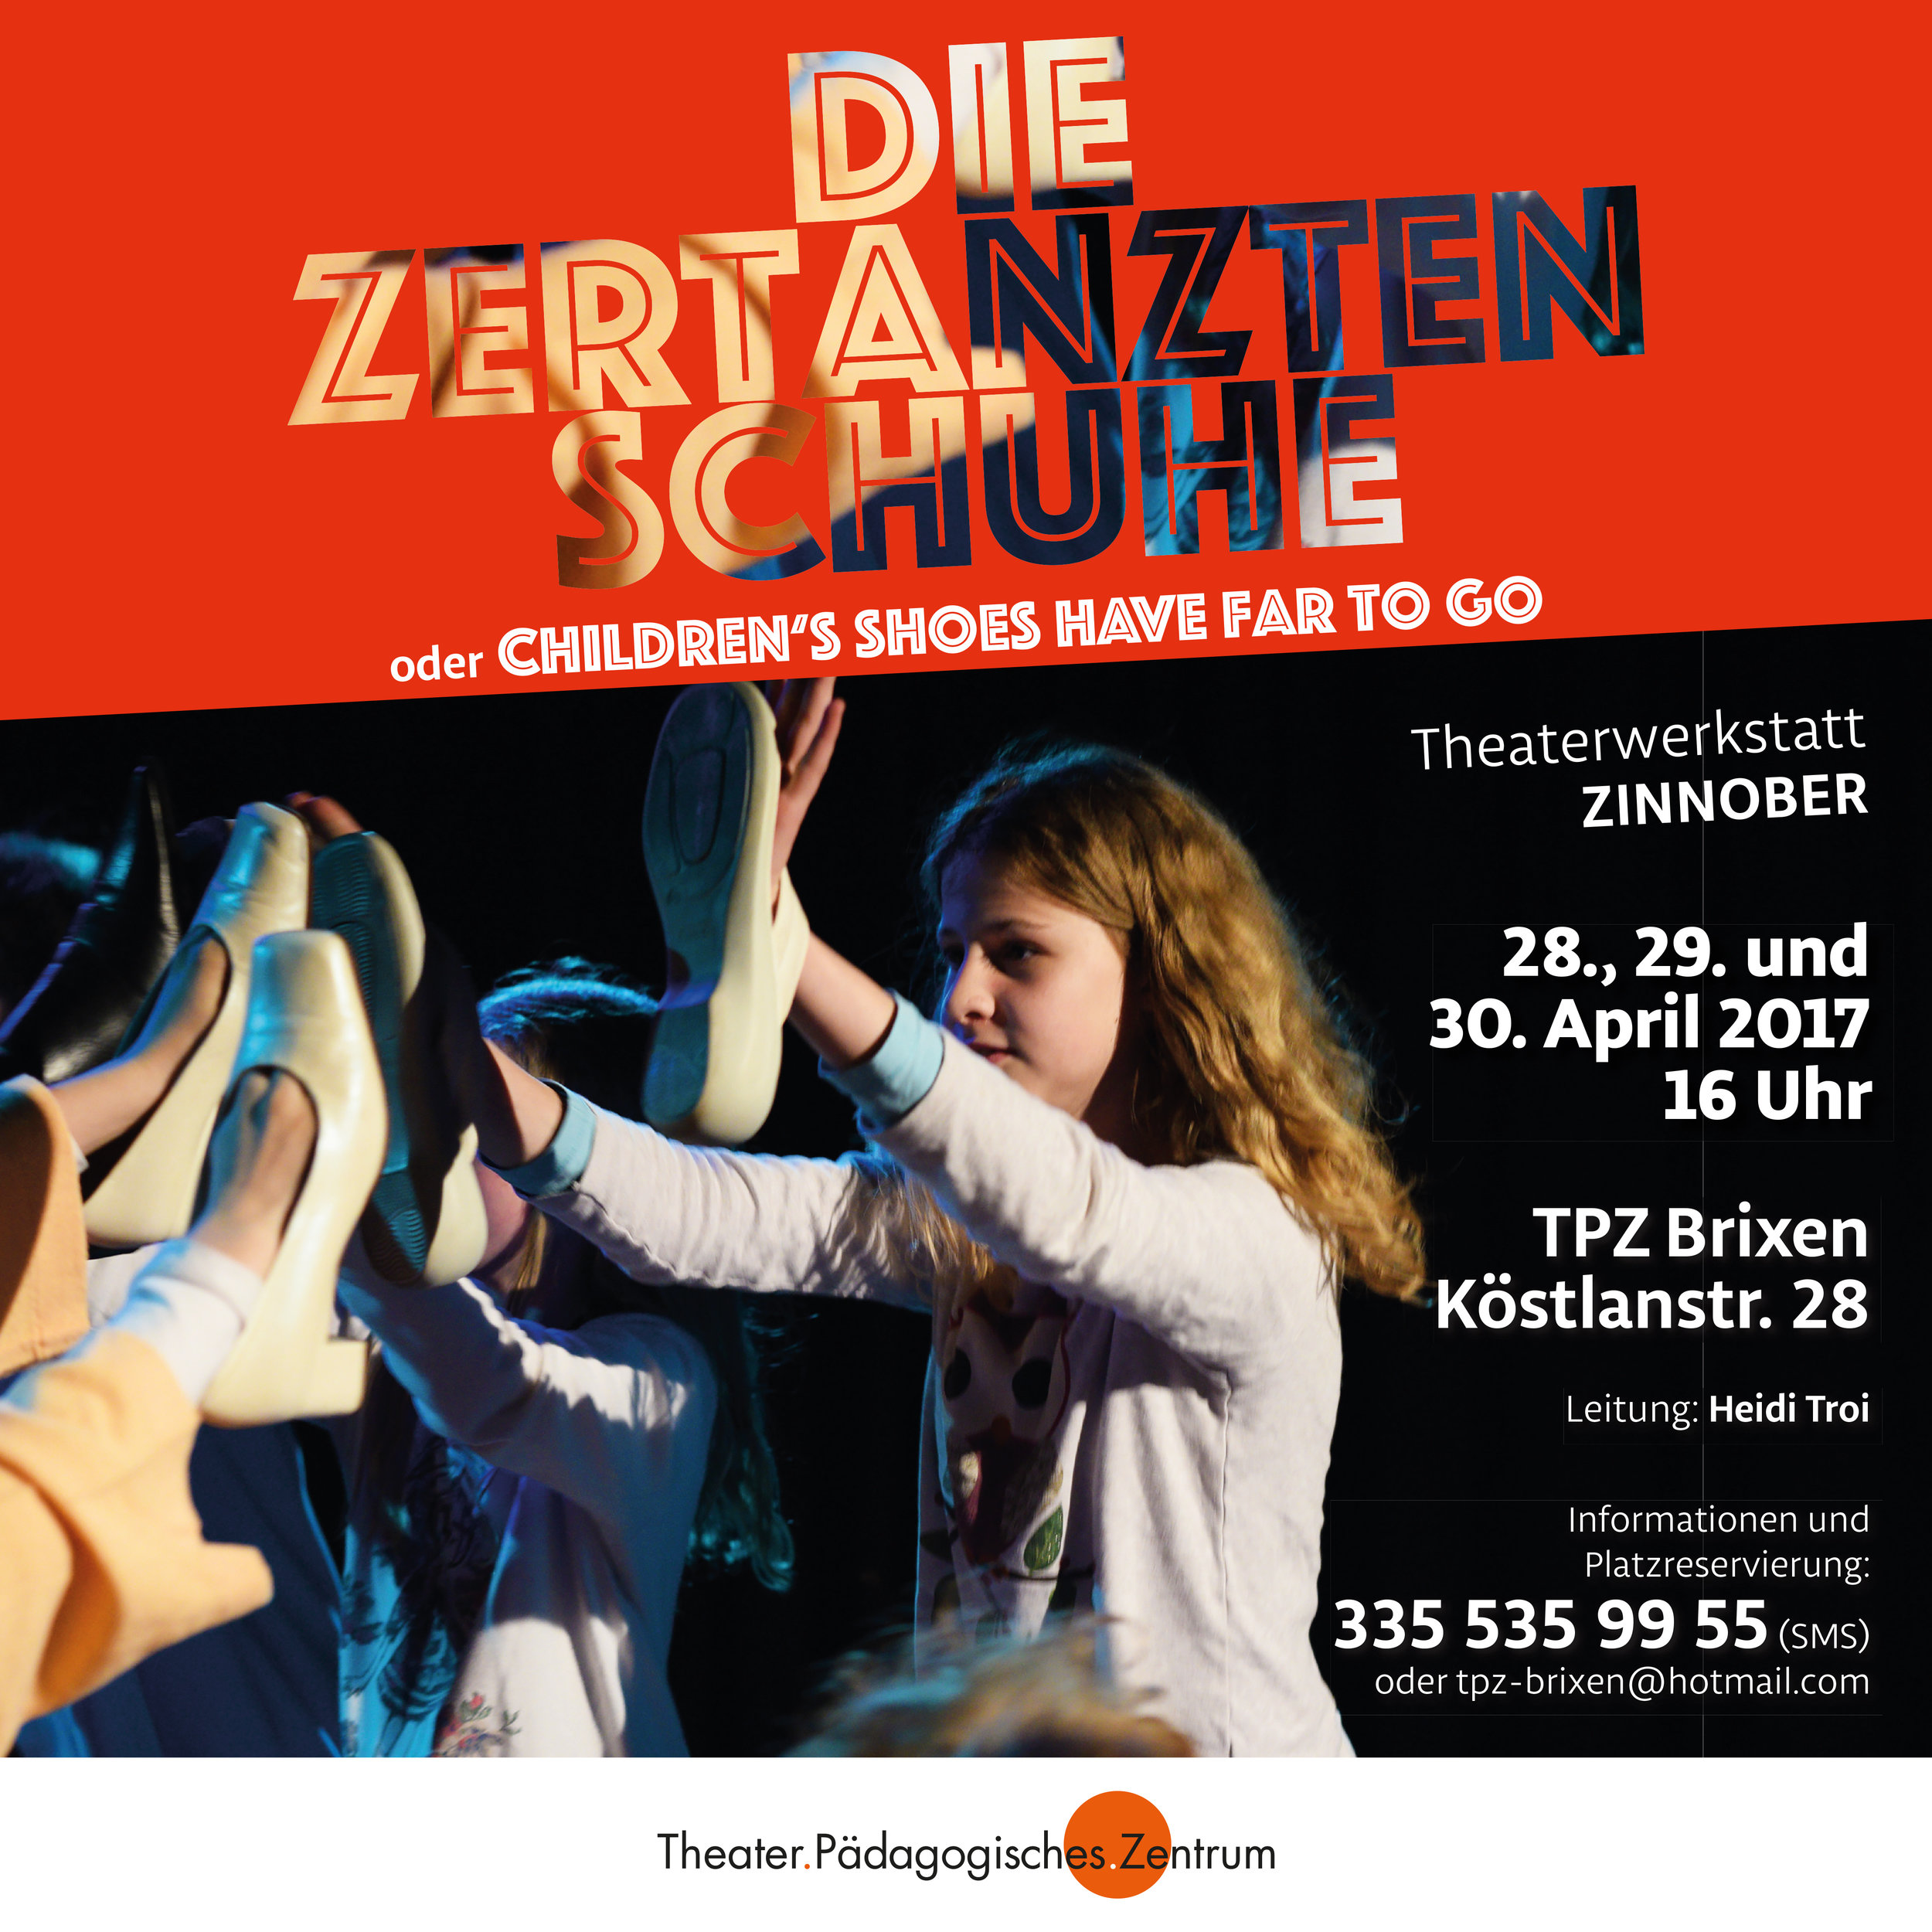 2017 zinnober zertanzte Schuhe Plakat.jpg